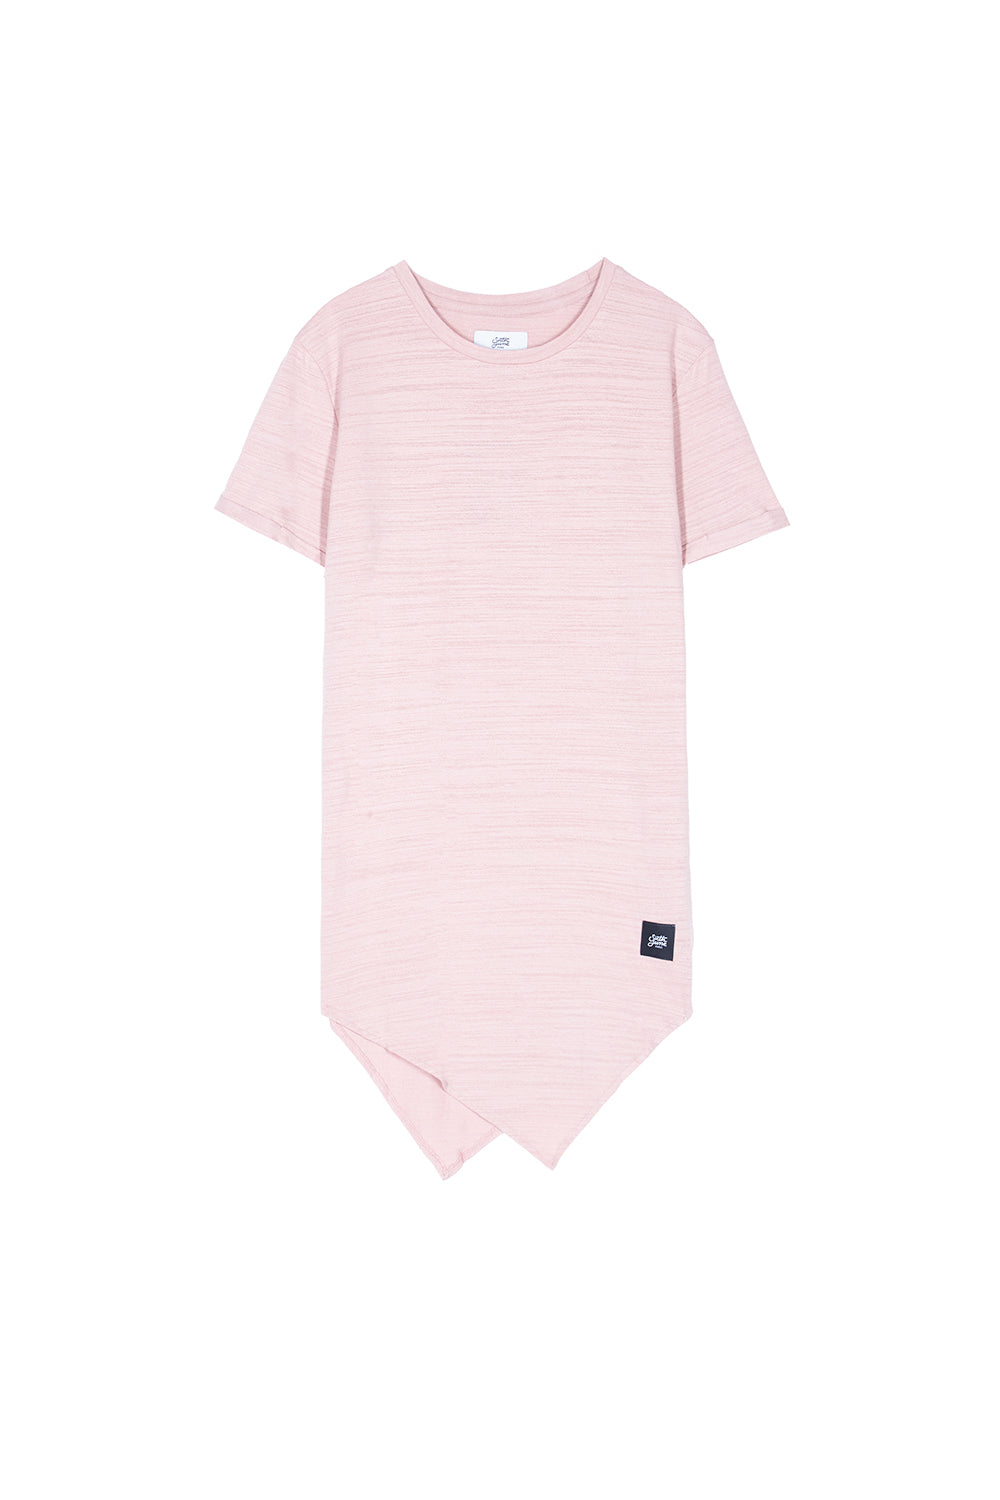 Sixth June - T-shirt pointe texturé rose